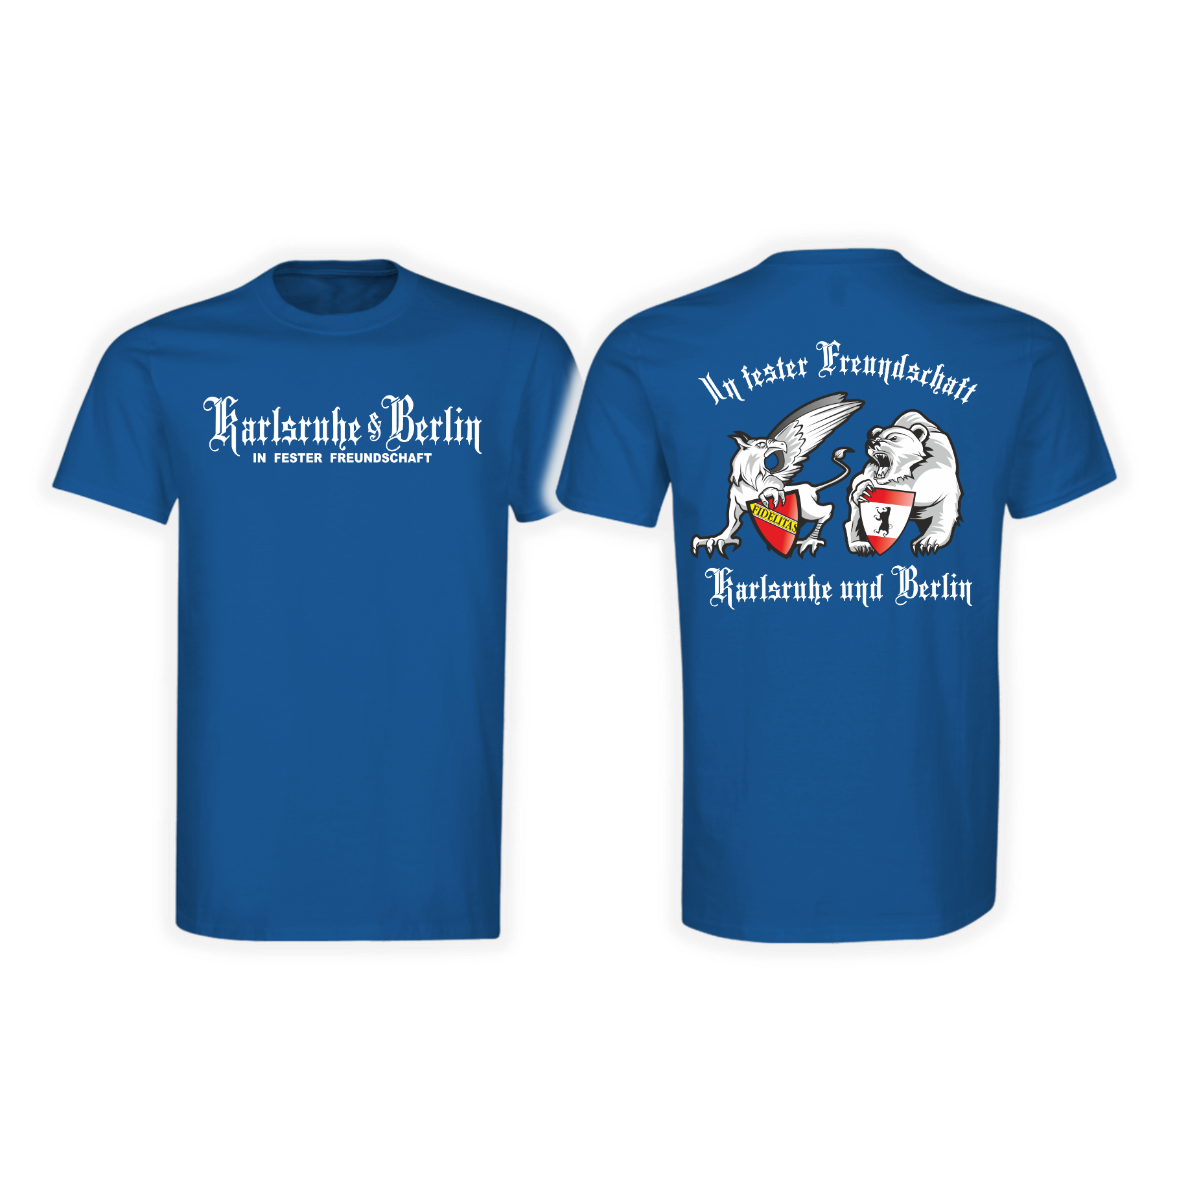 T-Shirt "Karlsruhe & Berlin - In fester Freundschaft" royal